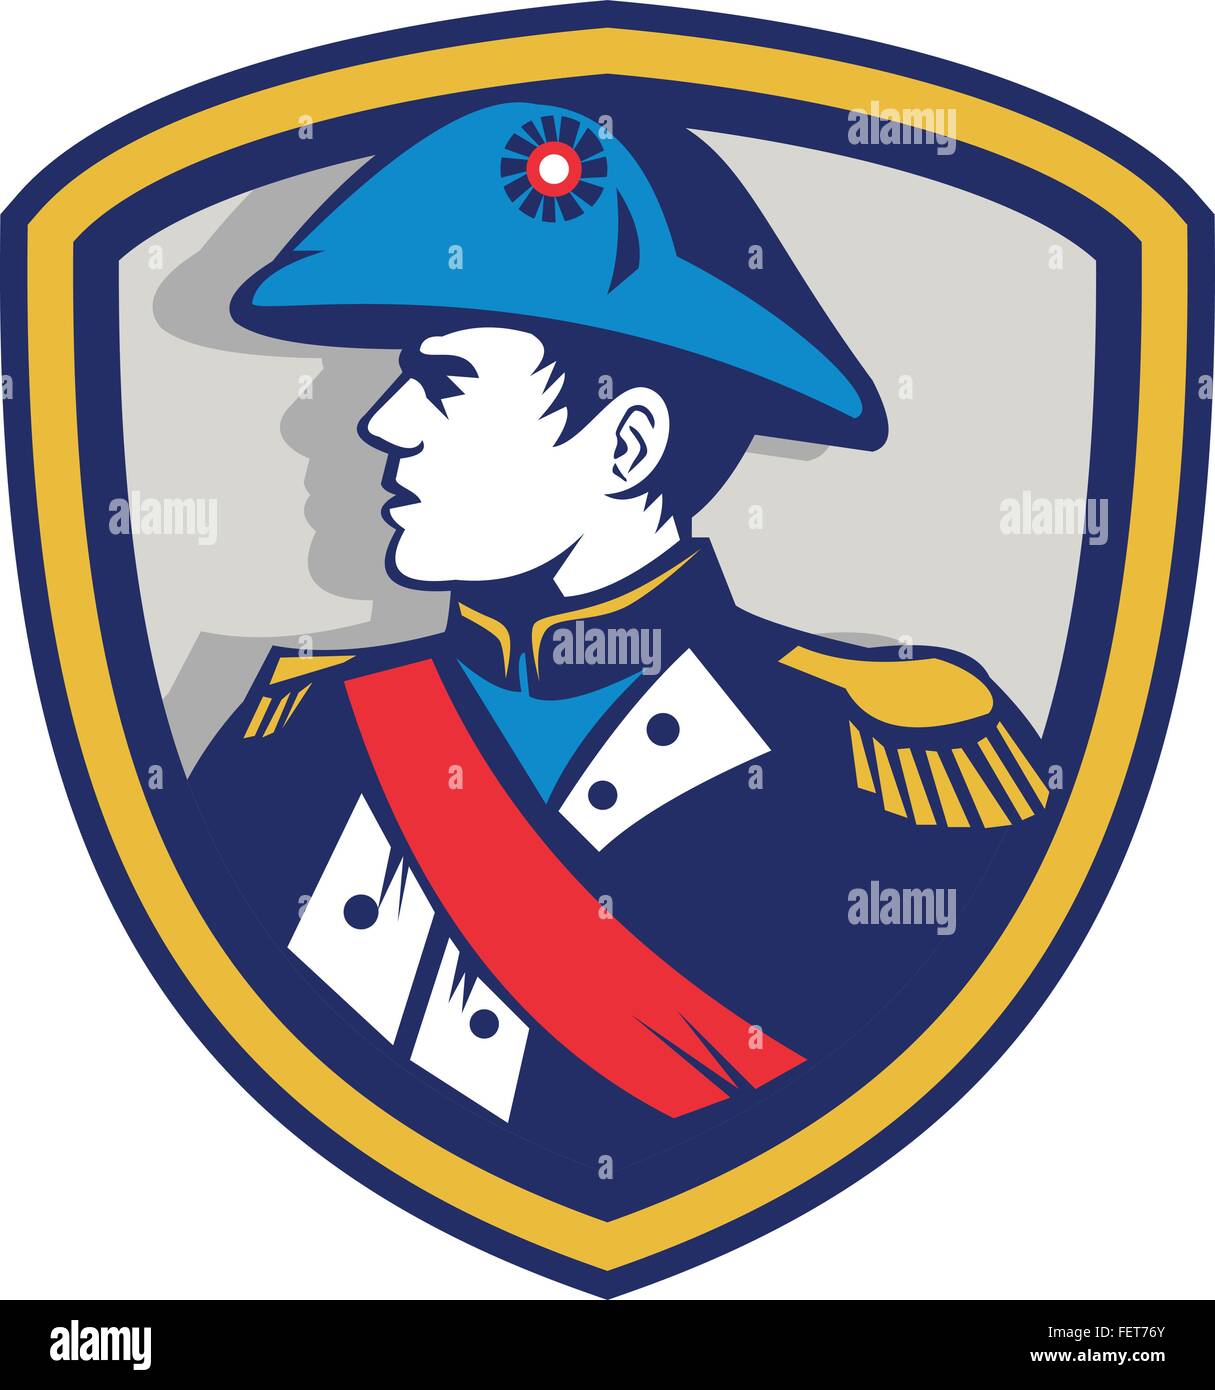 Abbildung des französischen Kommandanten general Napoleon Bonaparte tragen Zweispitz Zweispitz Hut Twihorn Hut auf Seite Satz innen Kamm im retro-Stil gemacht. Stock Vektor